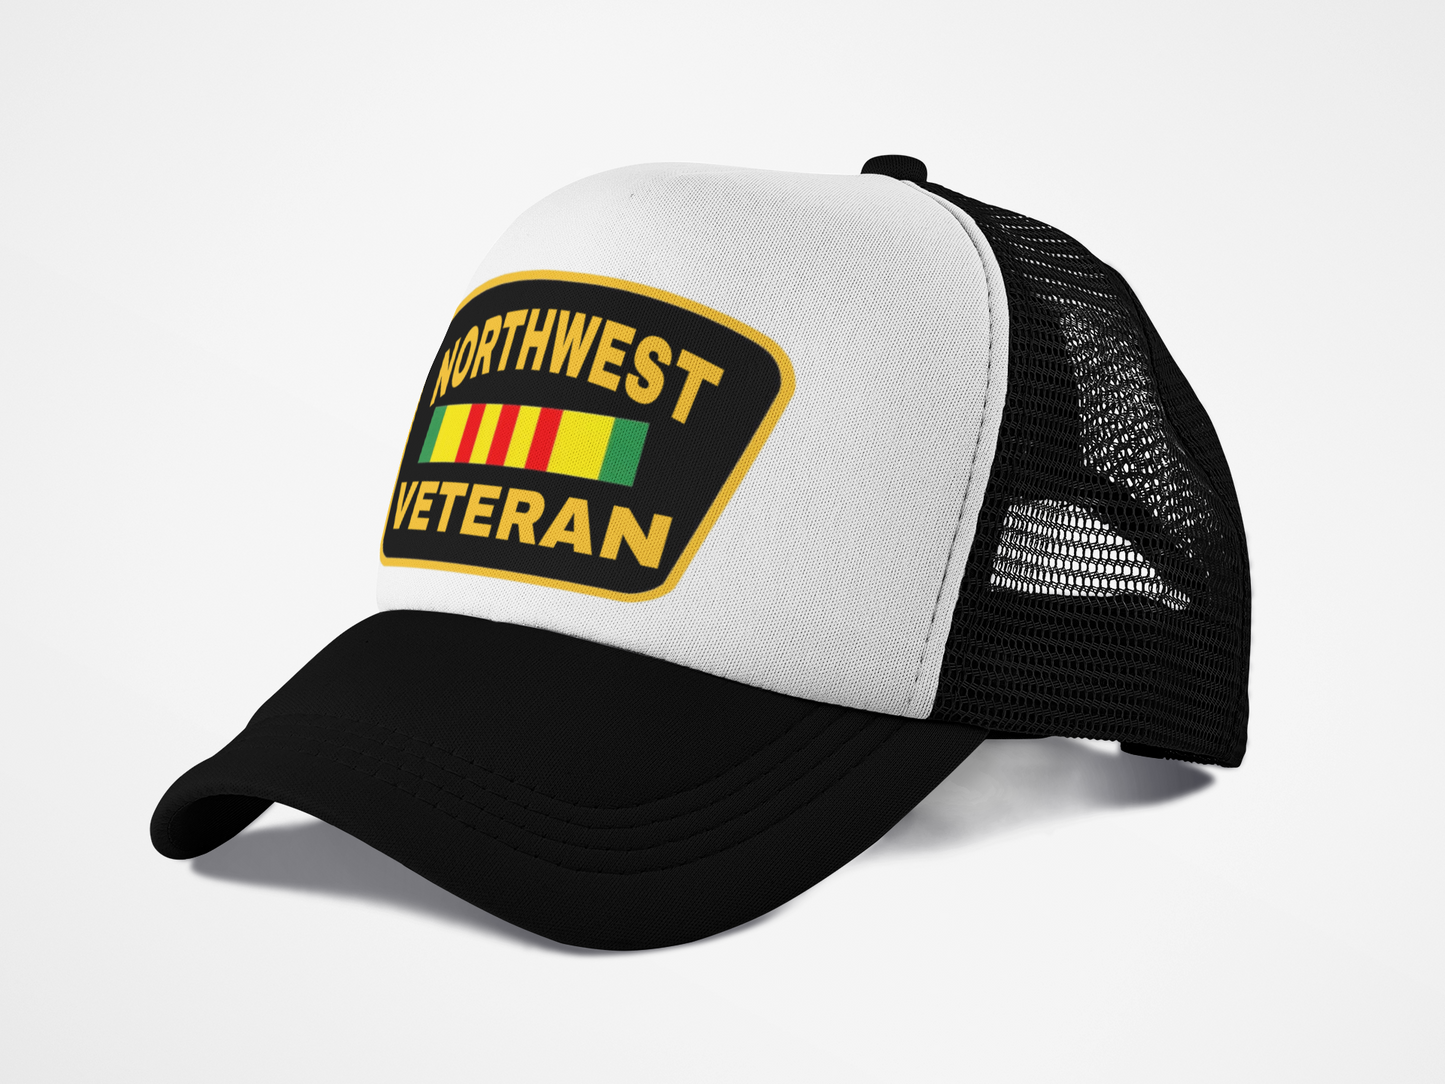 Northwest Veteran - Trucker Hat